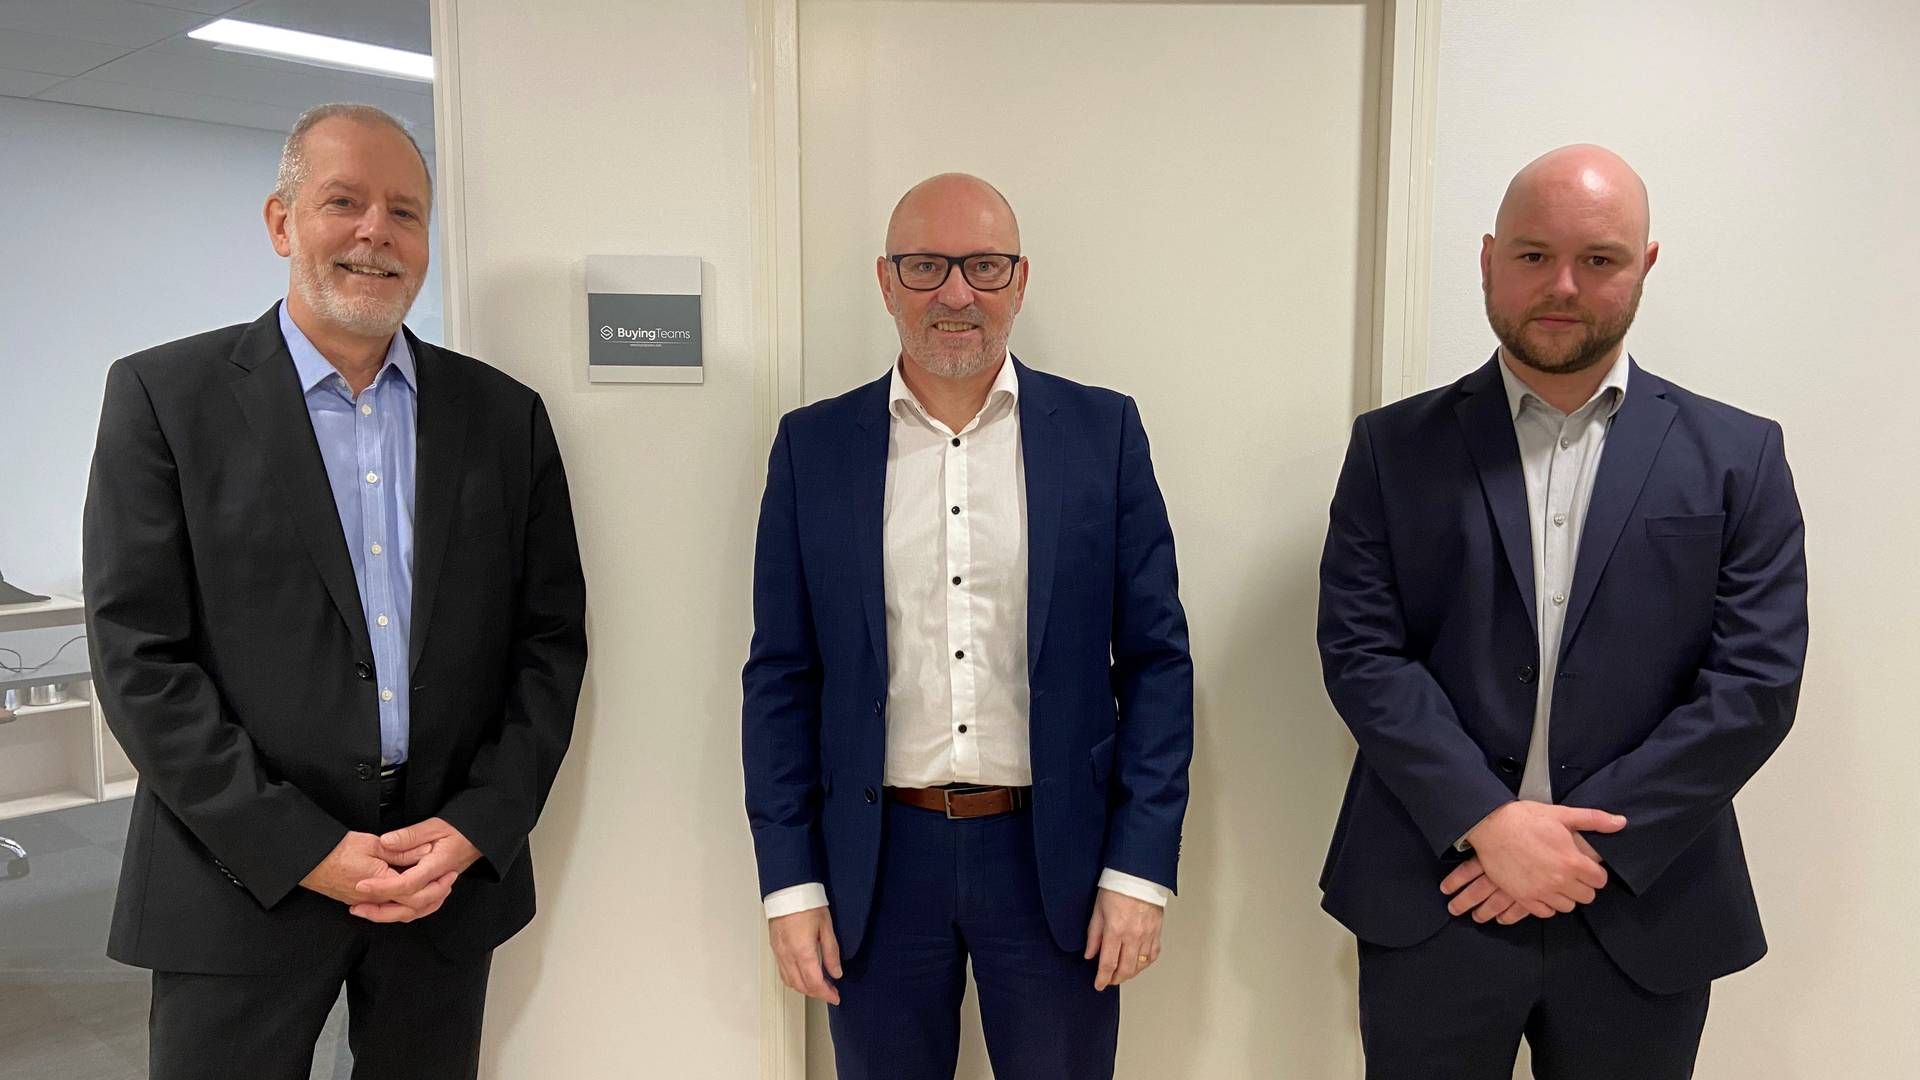 Ole Wulff (tv.), Claus Nielsen (mf.) og Daniel Lapp (th.) står bag fintech-virksomheden Buyingteams, der vil skabe et alternativ til tilfredshedsundersøgelser. | Foto: Pr